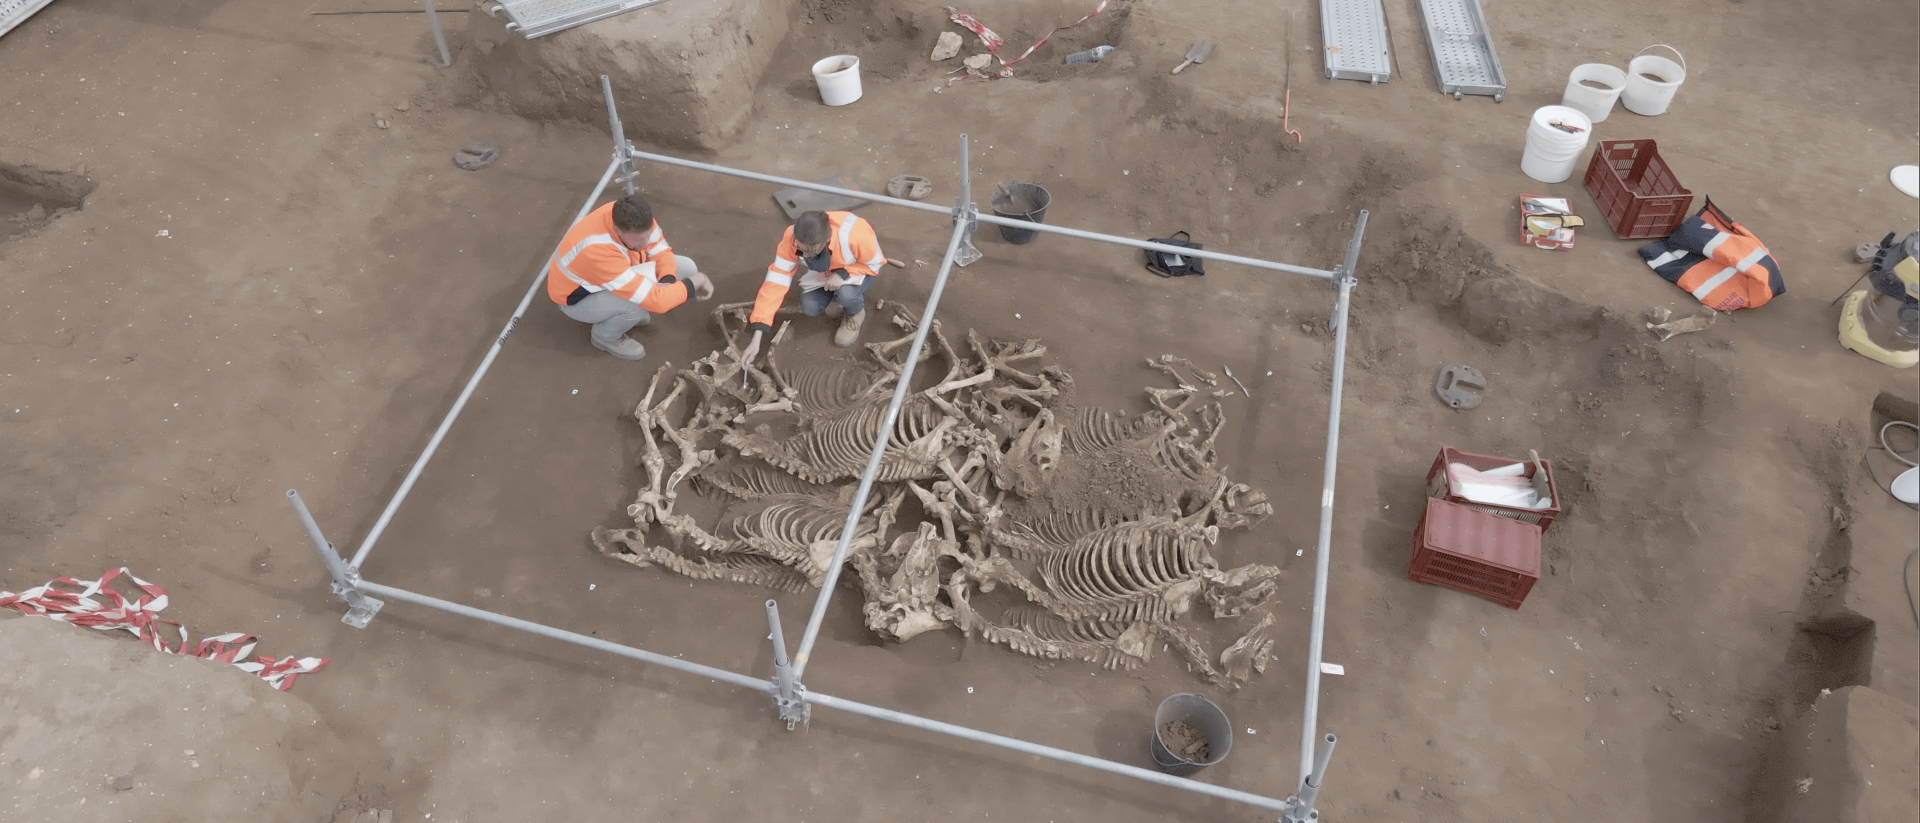 Ausgrabung einer Grube mit gallischen Pferdeskeletten im französischen Villedieu-sur-Indre.